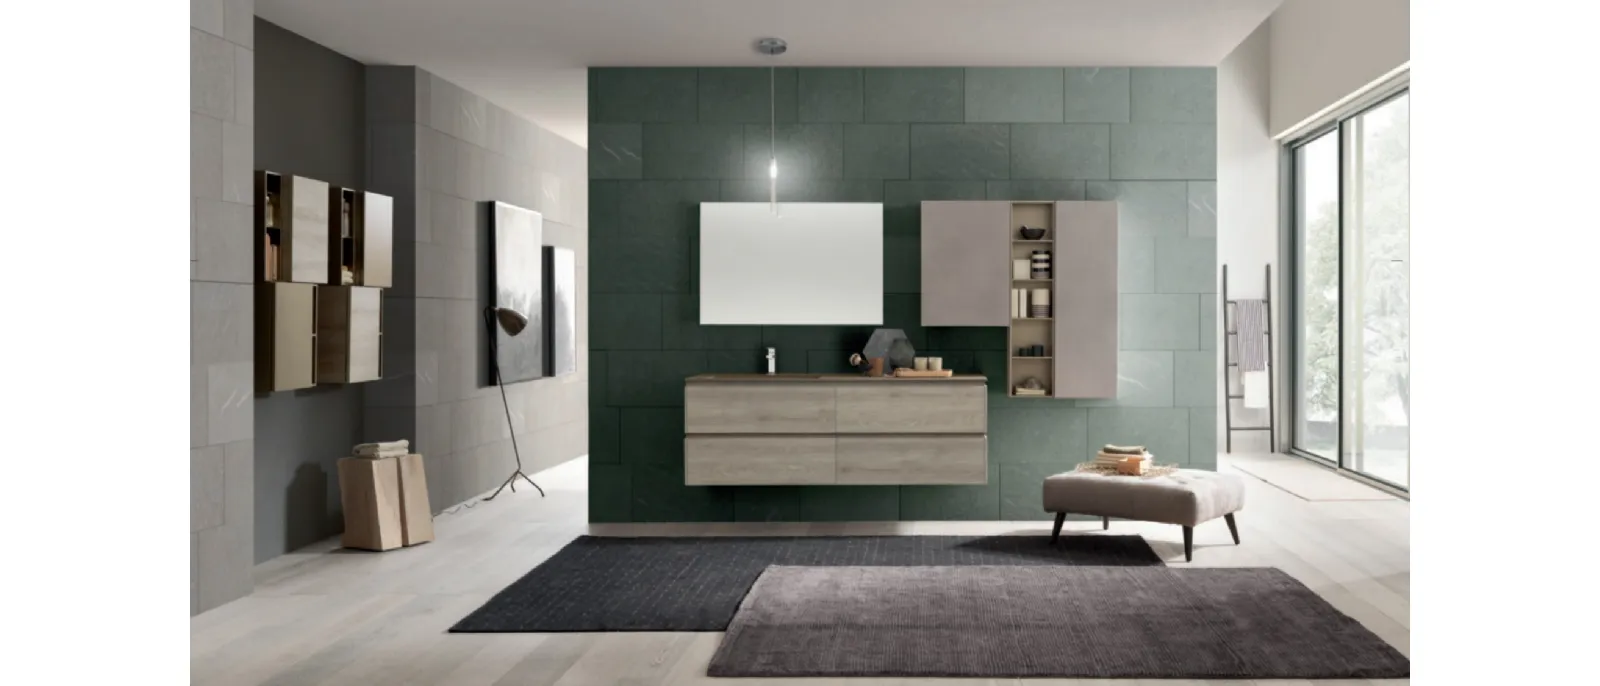 M2 System C220 Bathroom Furniture by Baxar